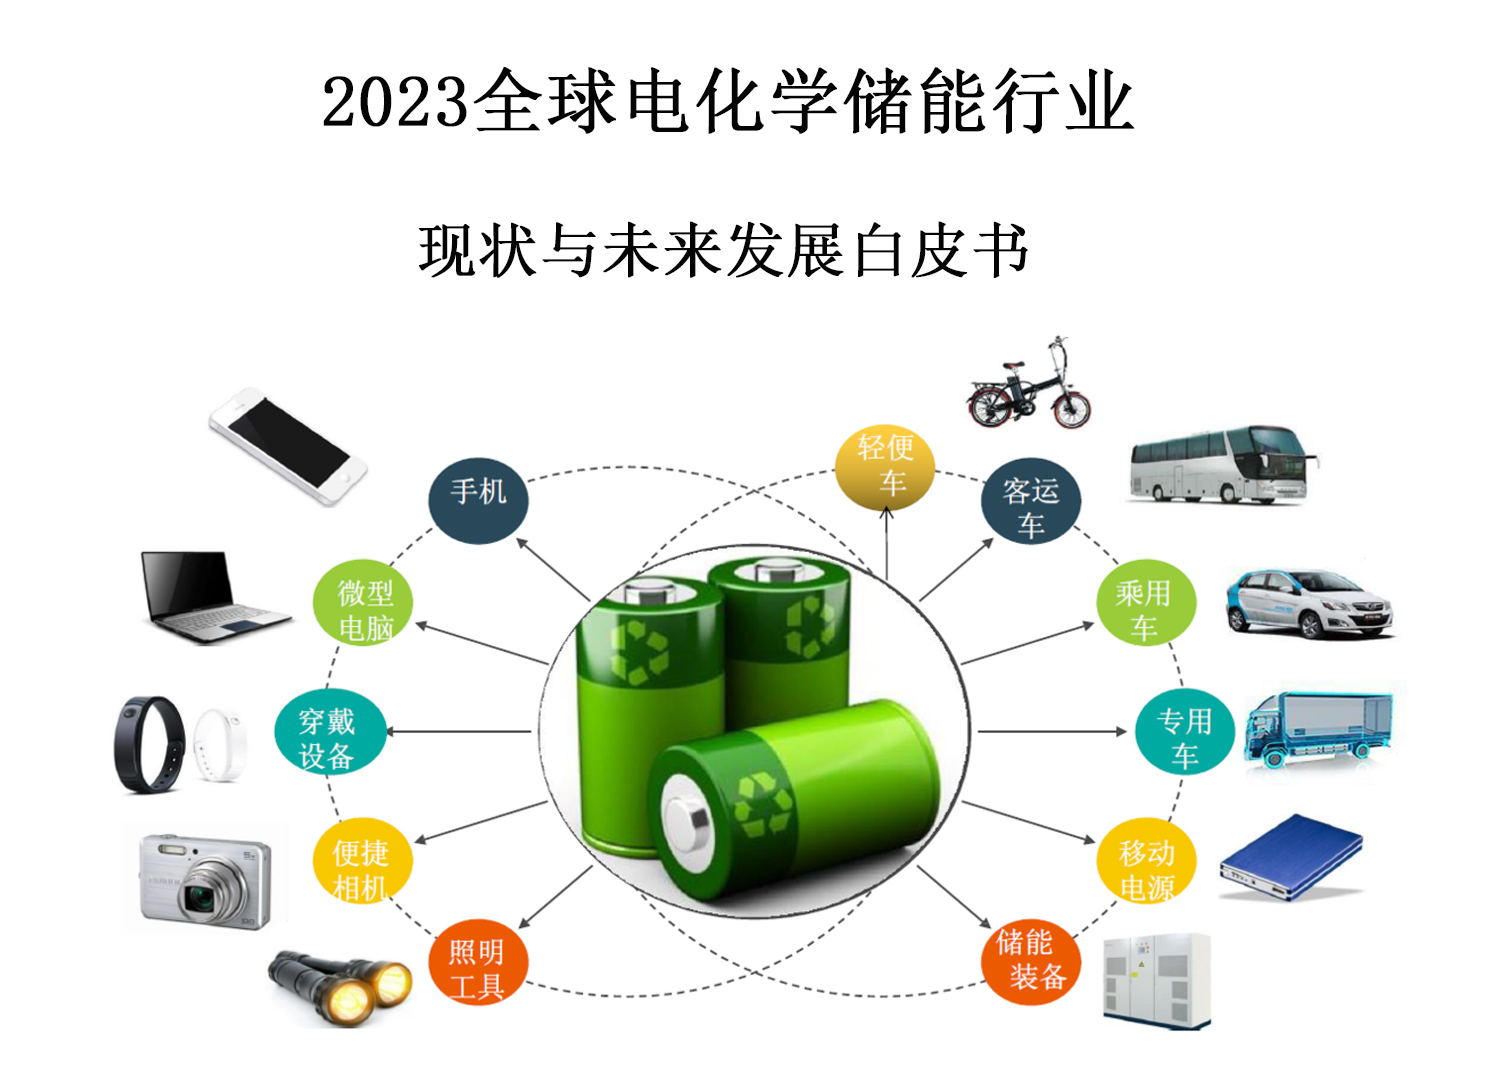 2023全球电化学储能行业现状与未来发展白皮书